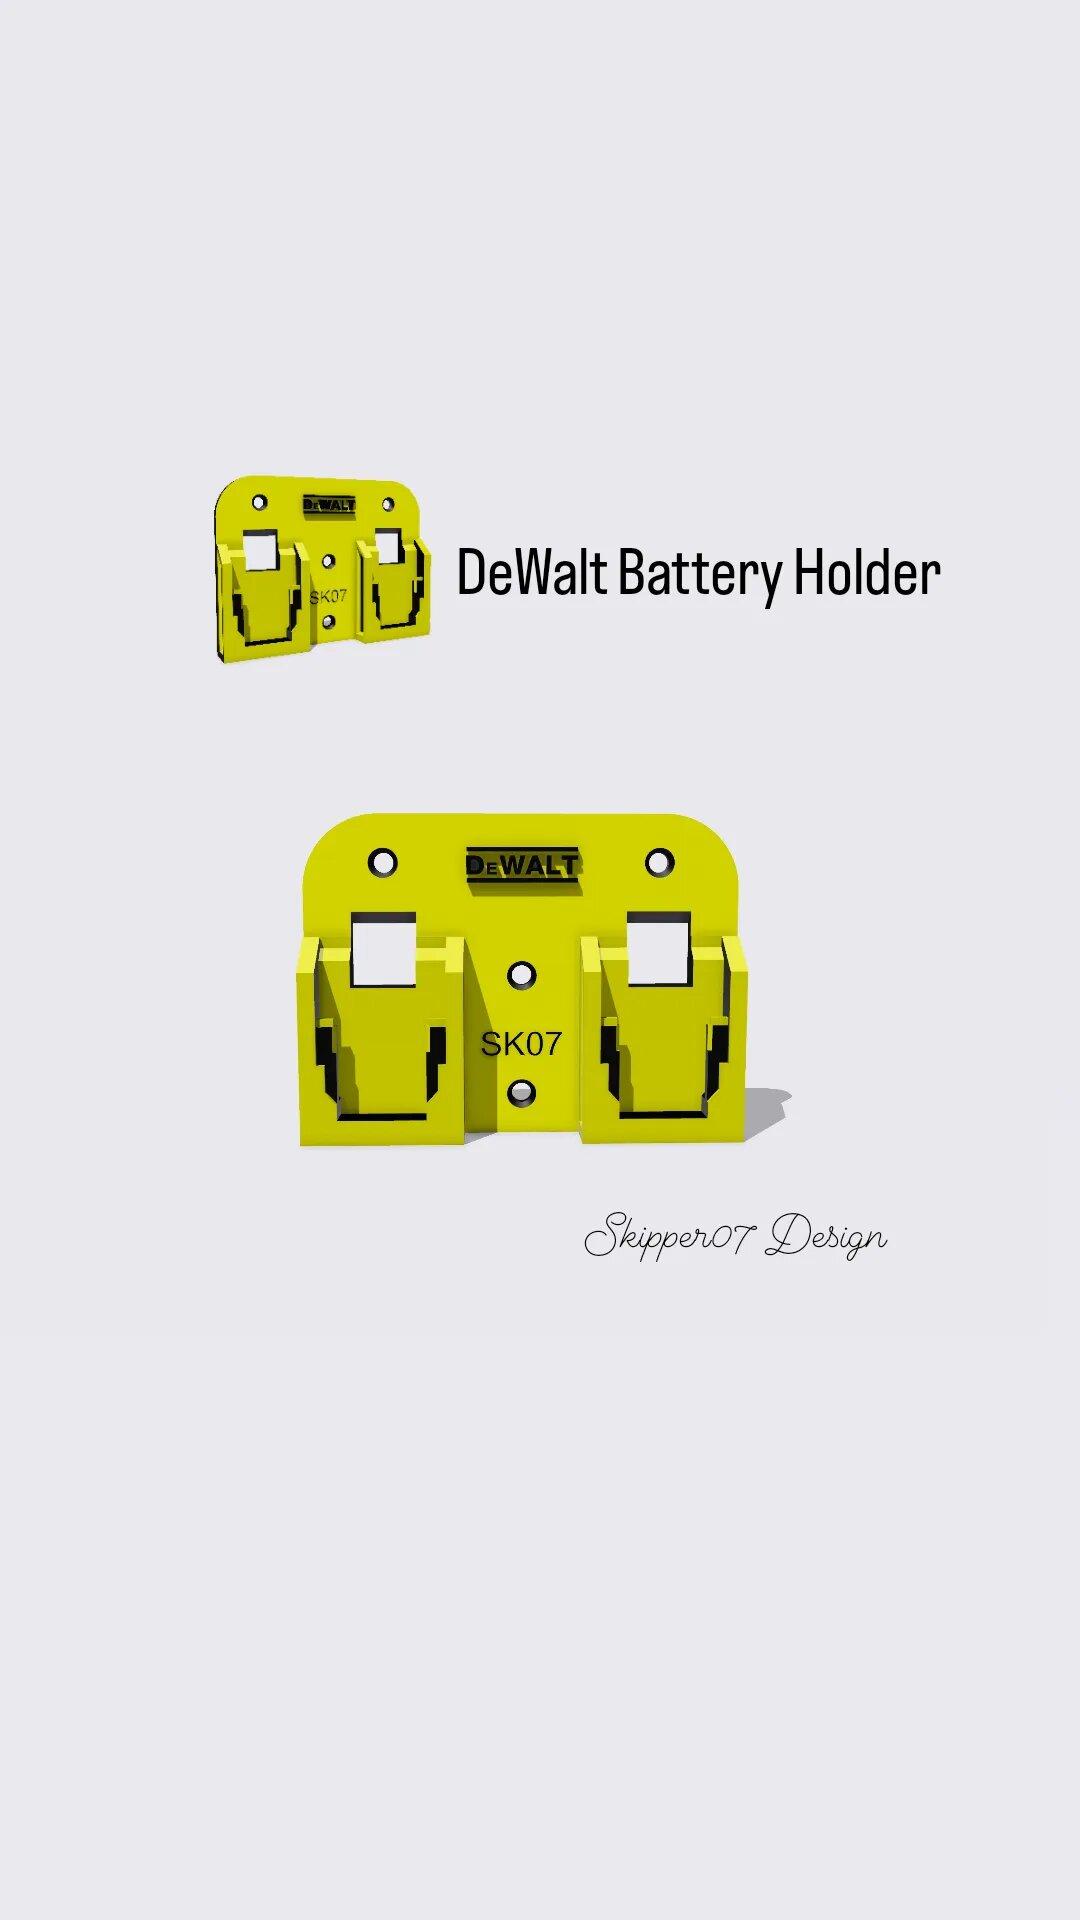 DeWalt battery holder X2.stl 3d model